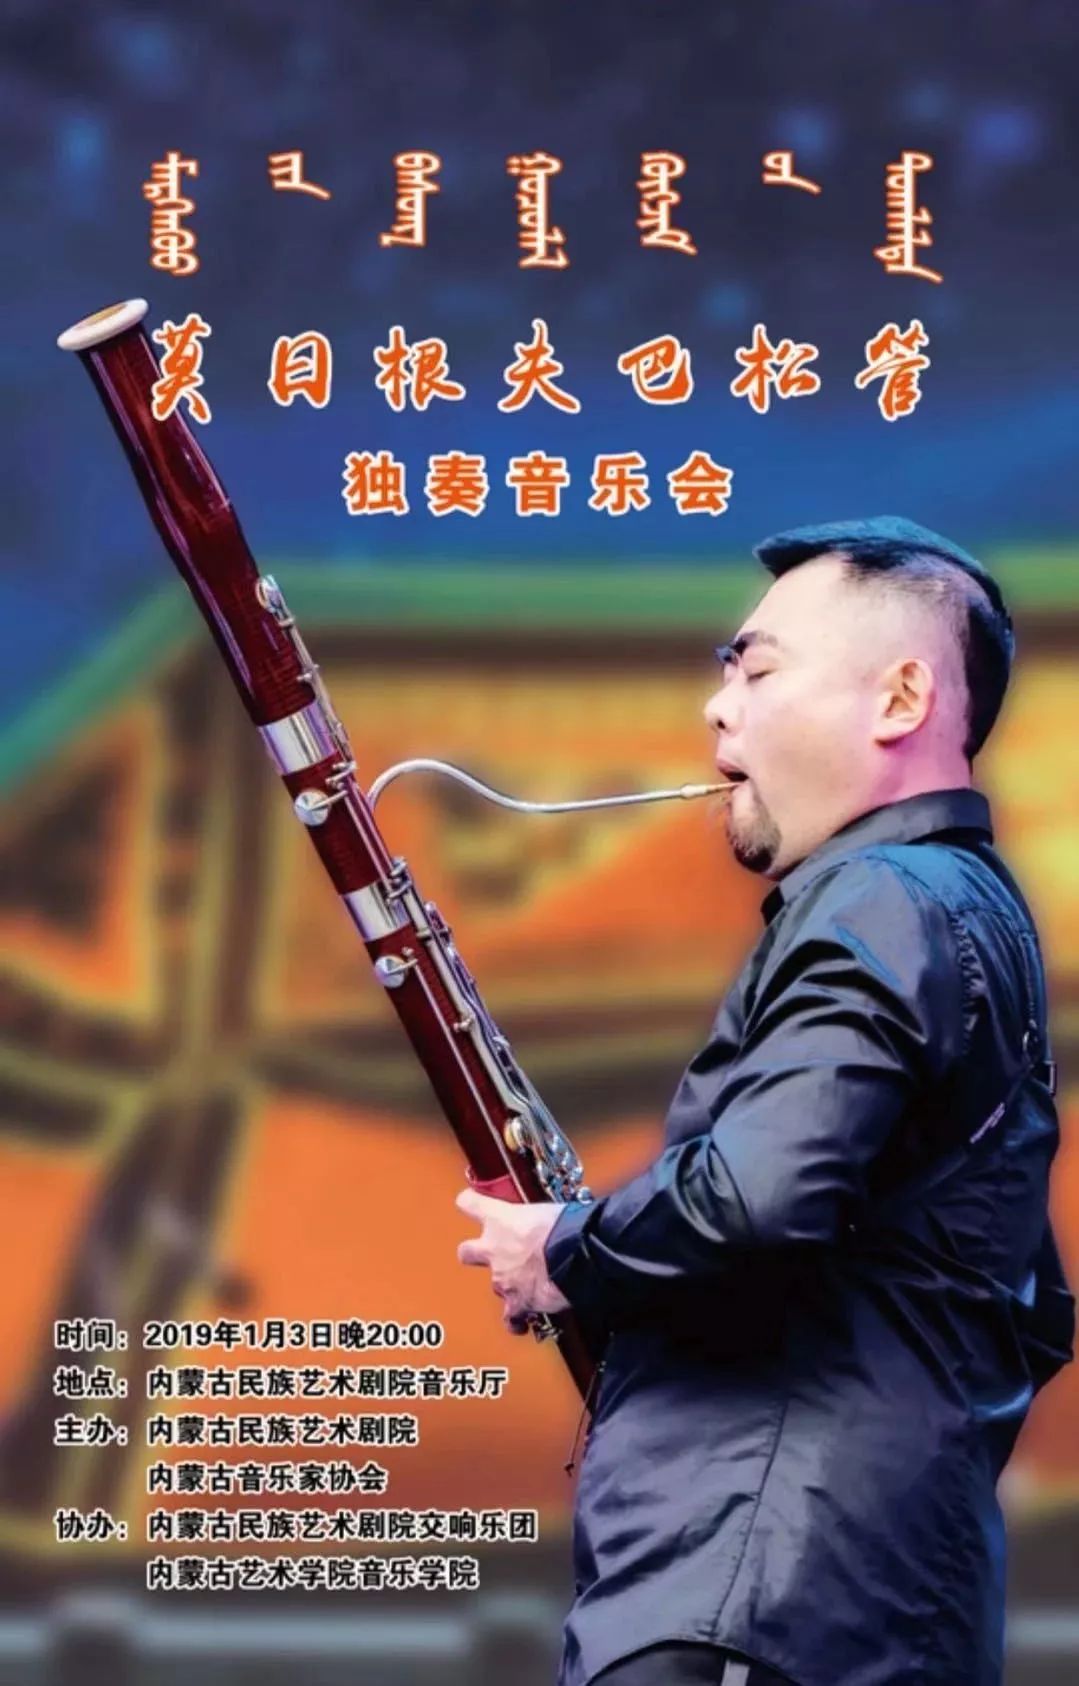 演出预告1月3日莫日根夫巴松管独奏音乐会于内蒙古民族艺术剧院音乐厅